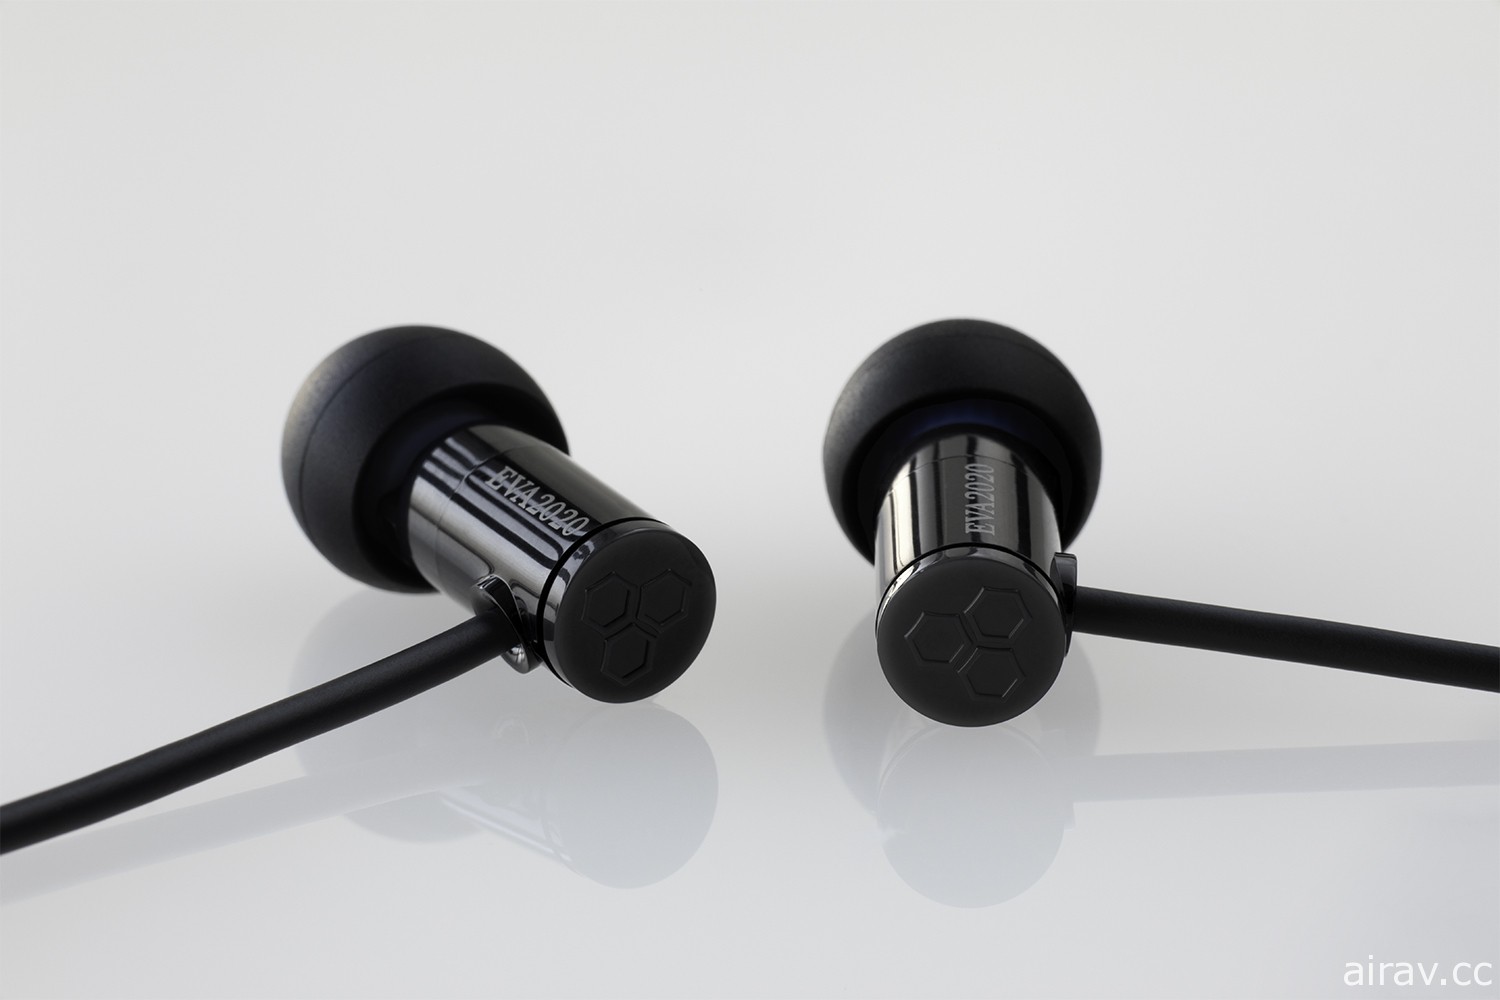 SNEXT 發表《福音戰士》合作設計款式無線 / 有線耳機 預定 8 月上市